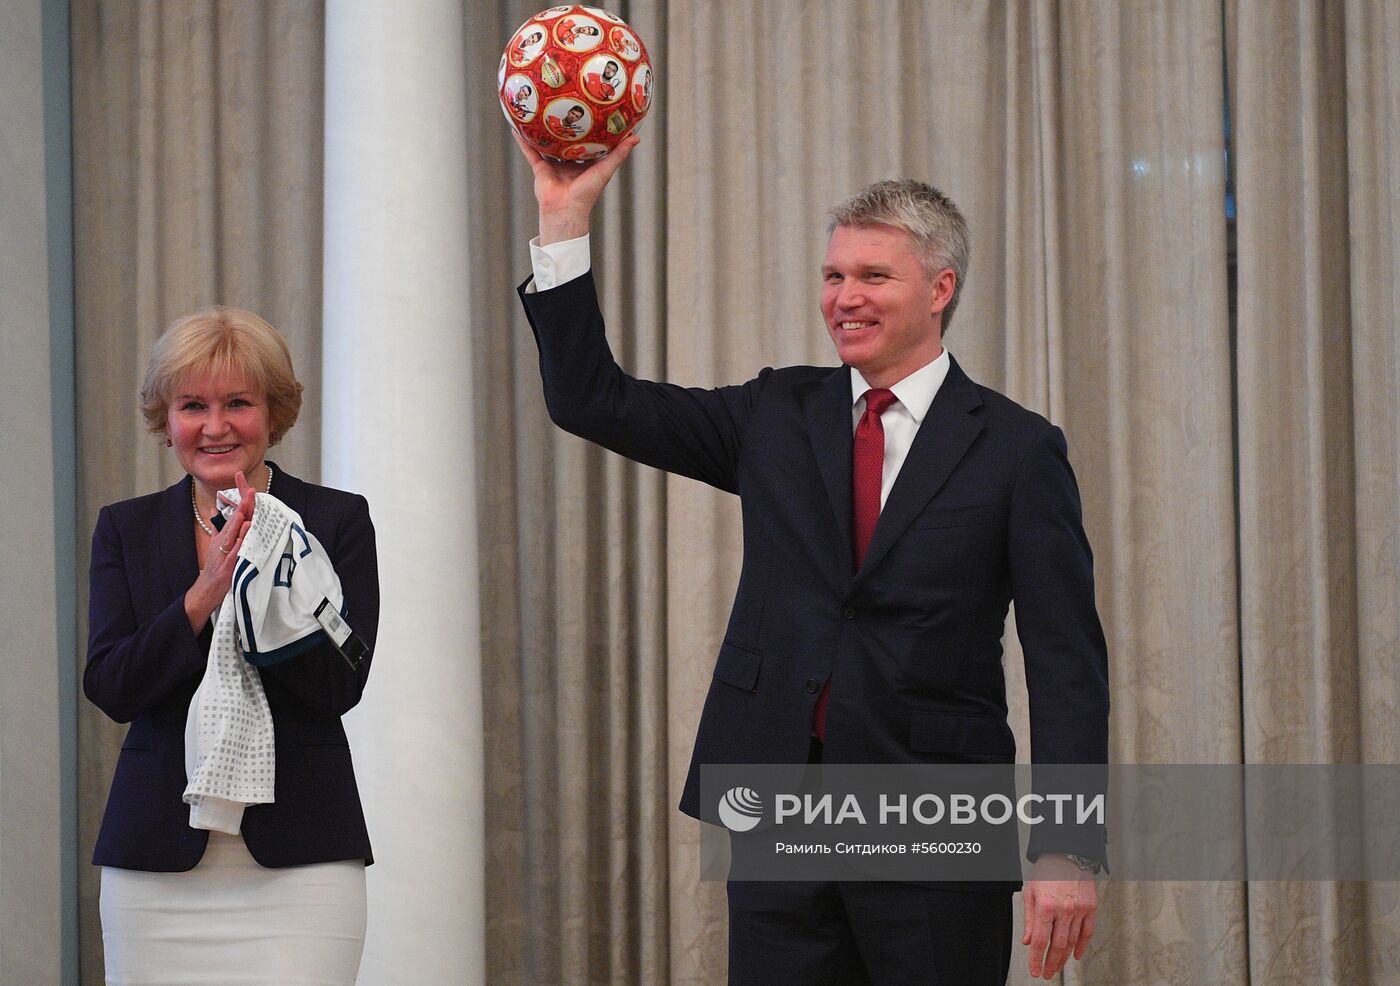 Футболисты сборной России получили звания заслуженных мастеров спорта